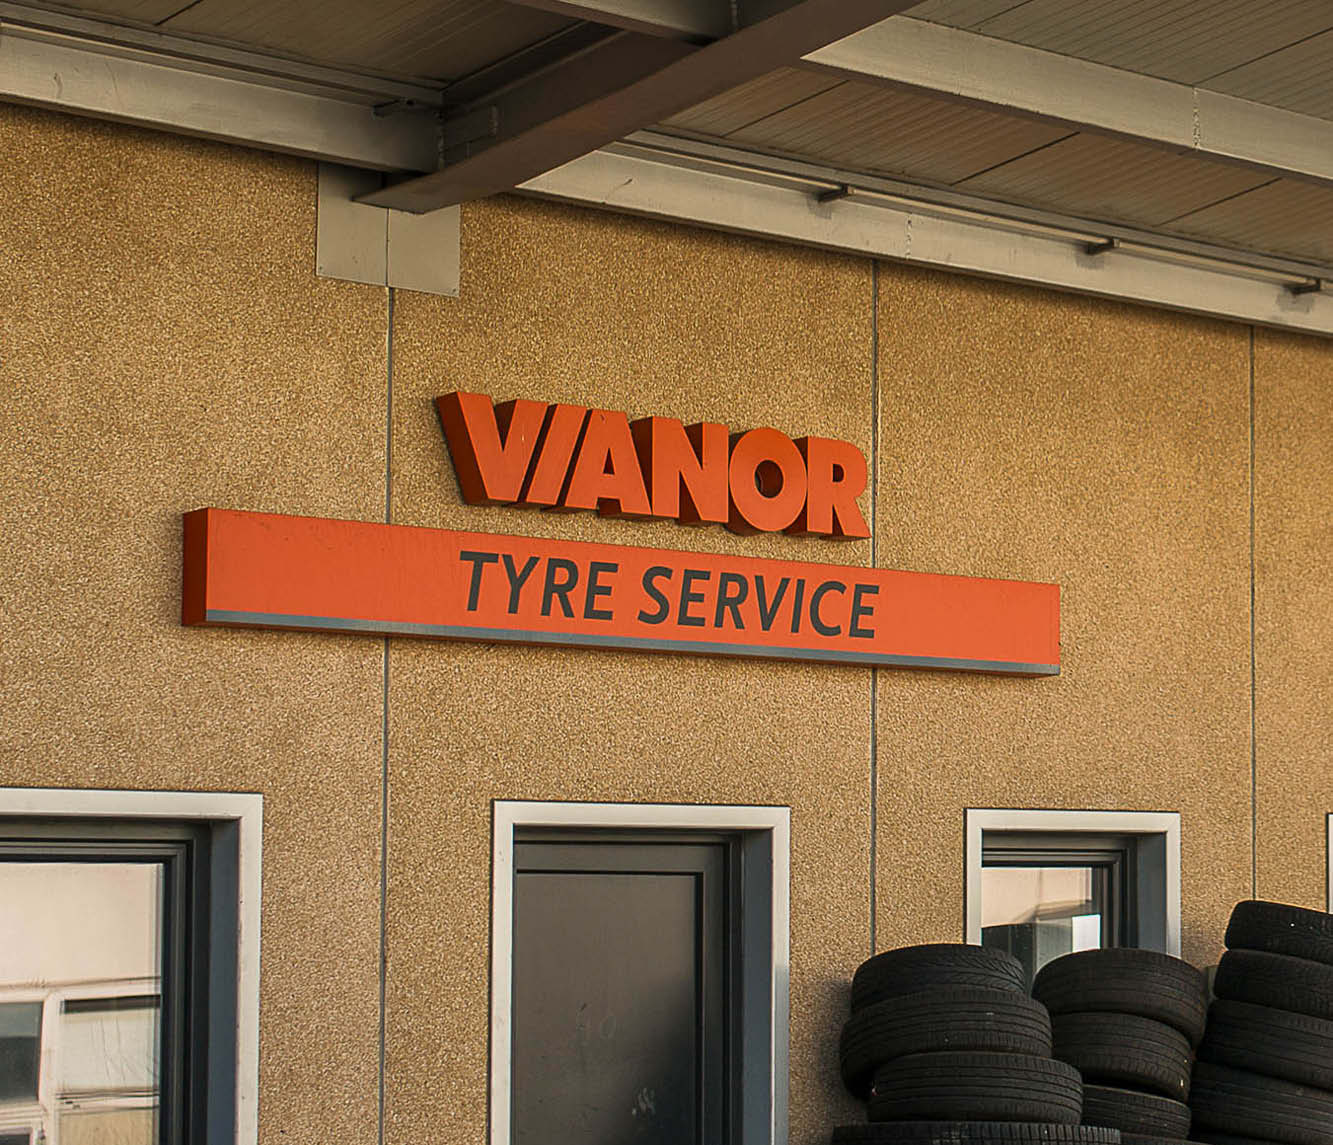 Kombinacija reklamnega napisa: »Tyre service« iz aluminijaste pločevine s samolepilno folijo in 3D osvetljene črke